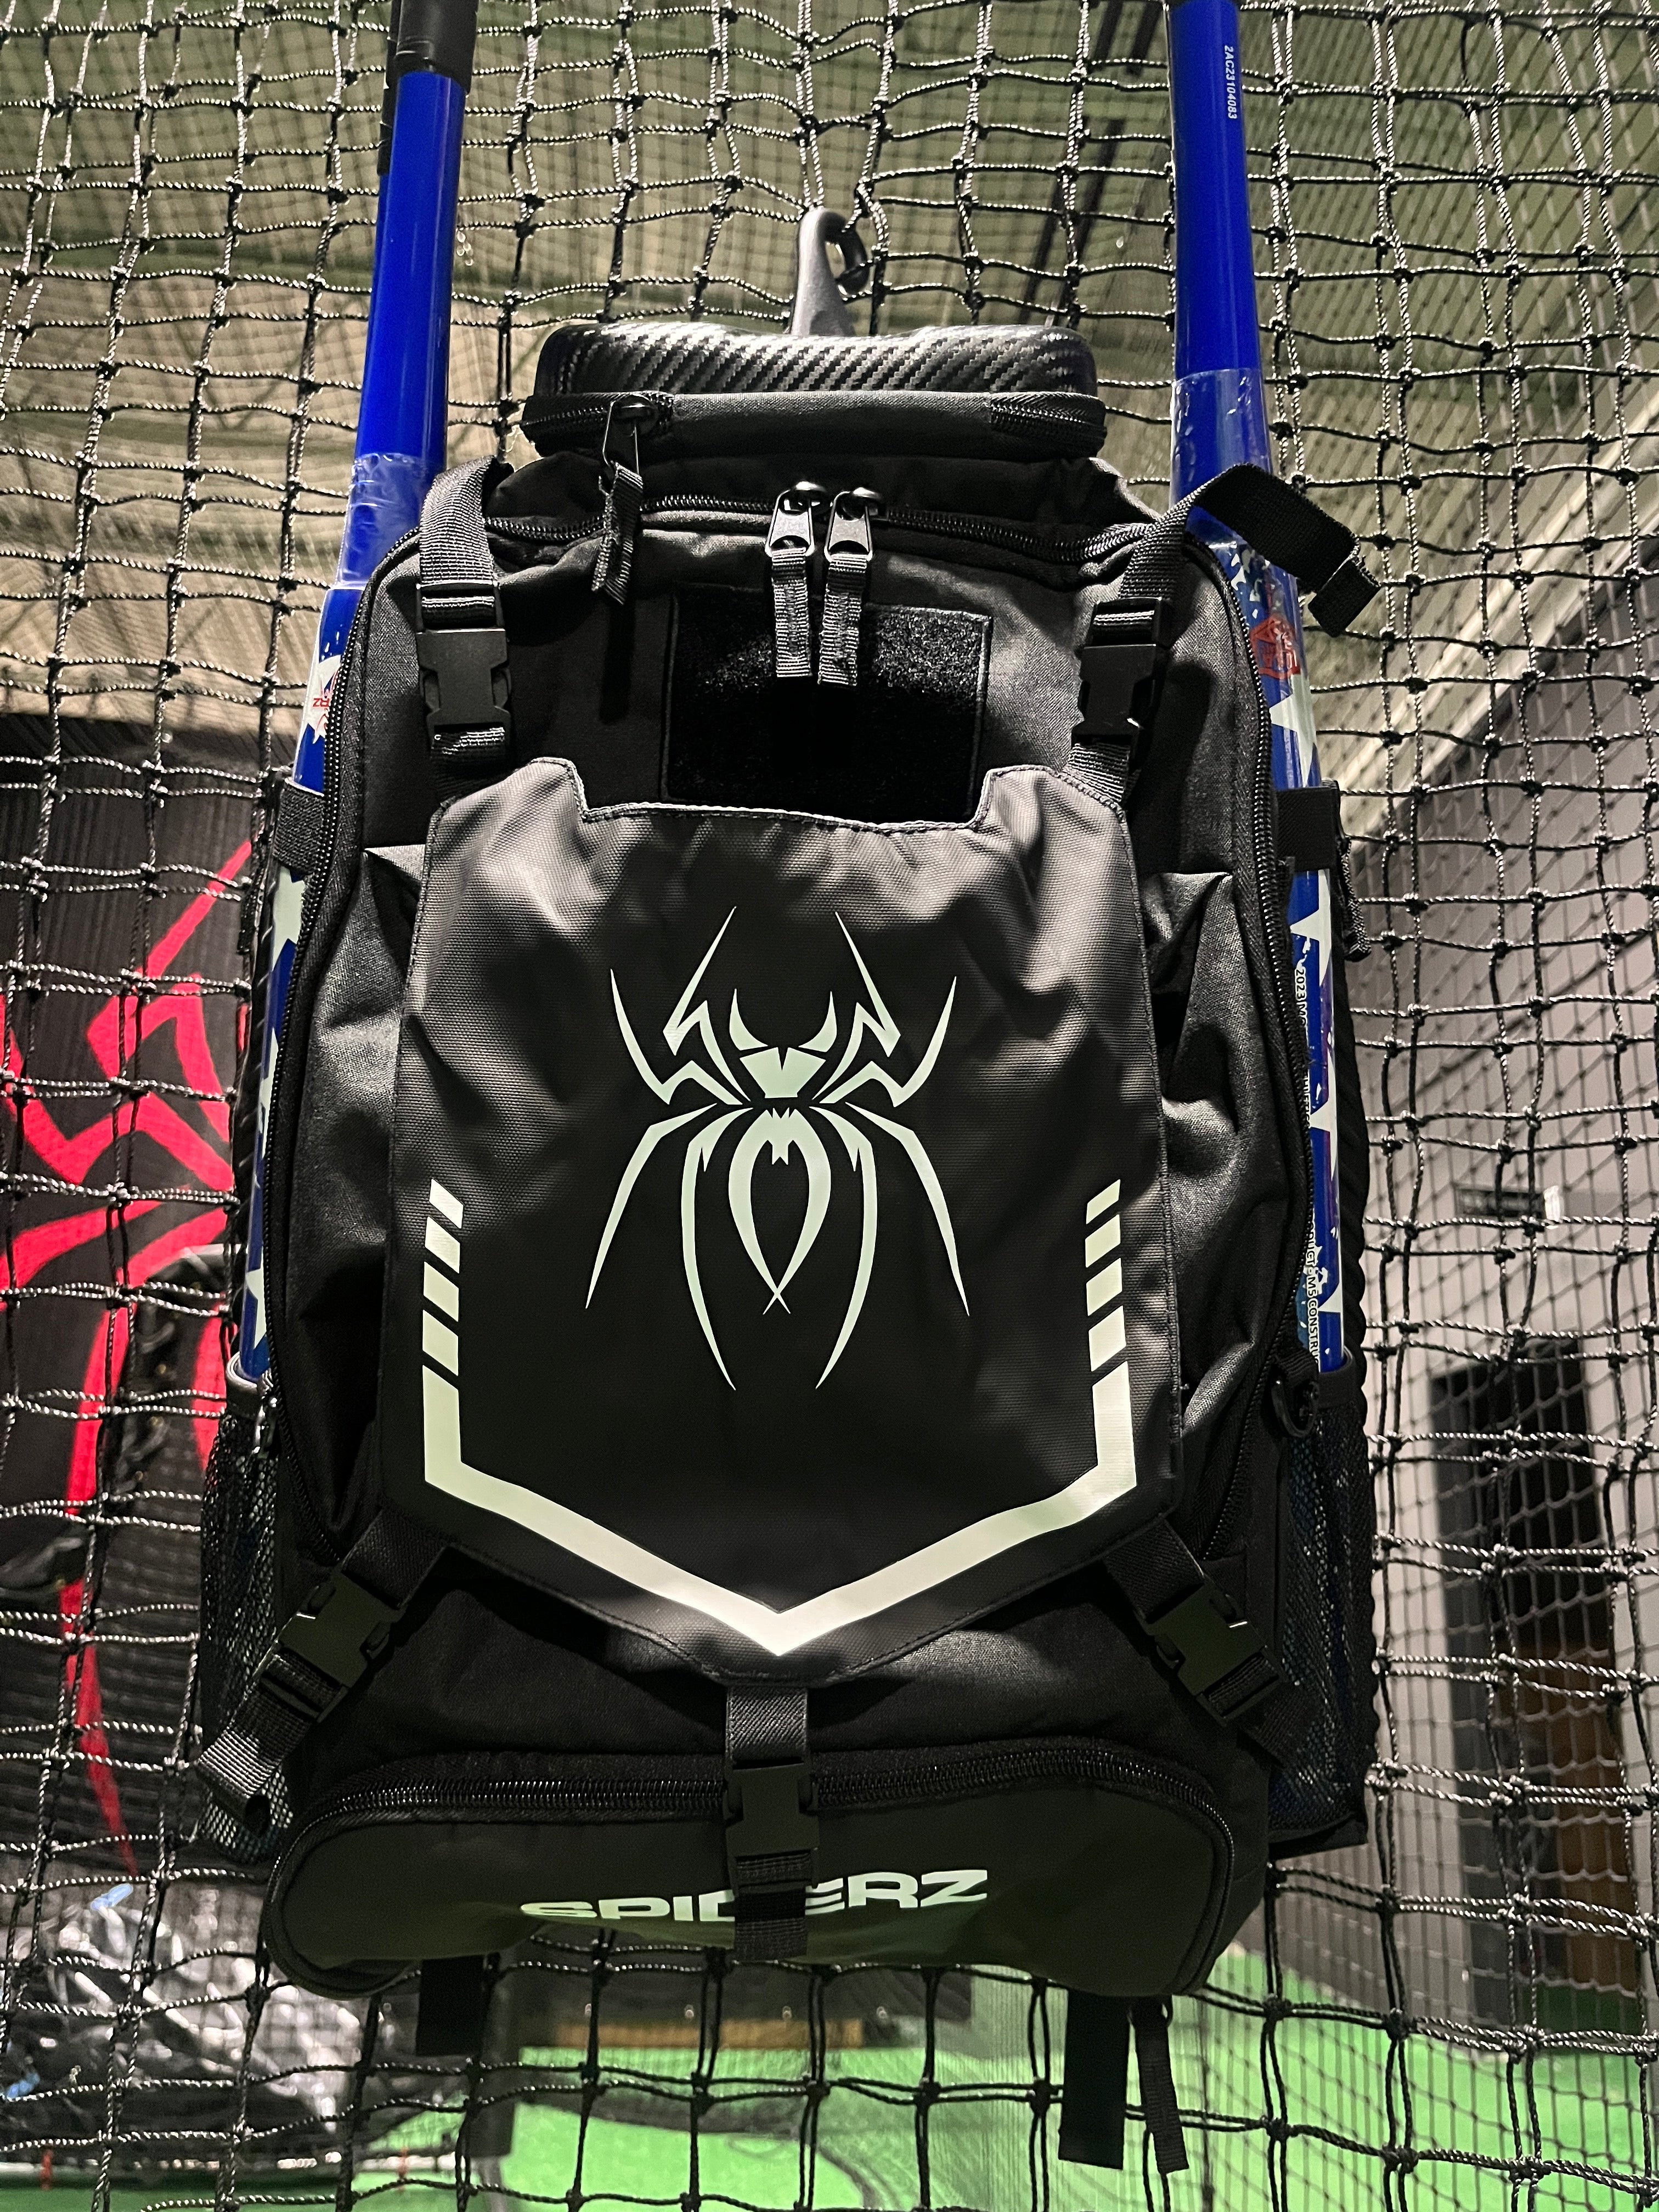 Spiderz "Industry" Bat Pack - Black/White